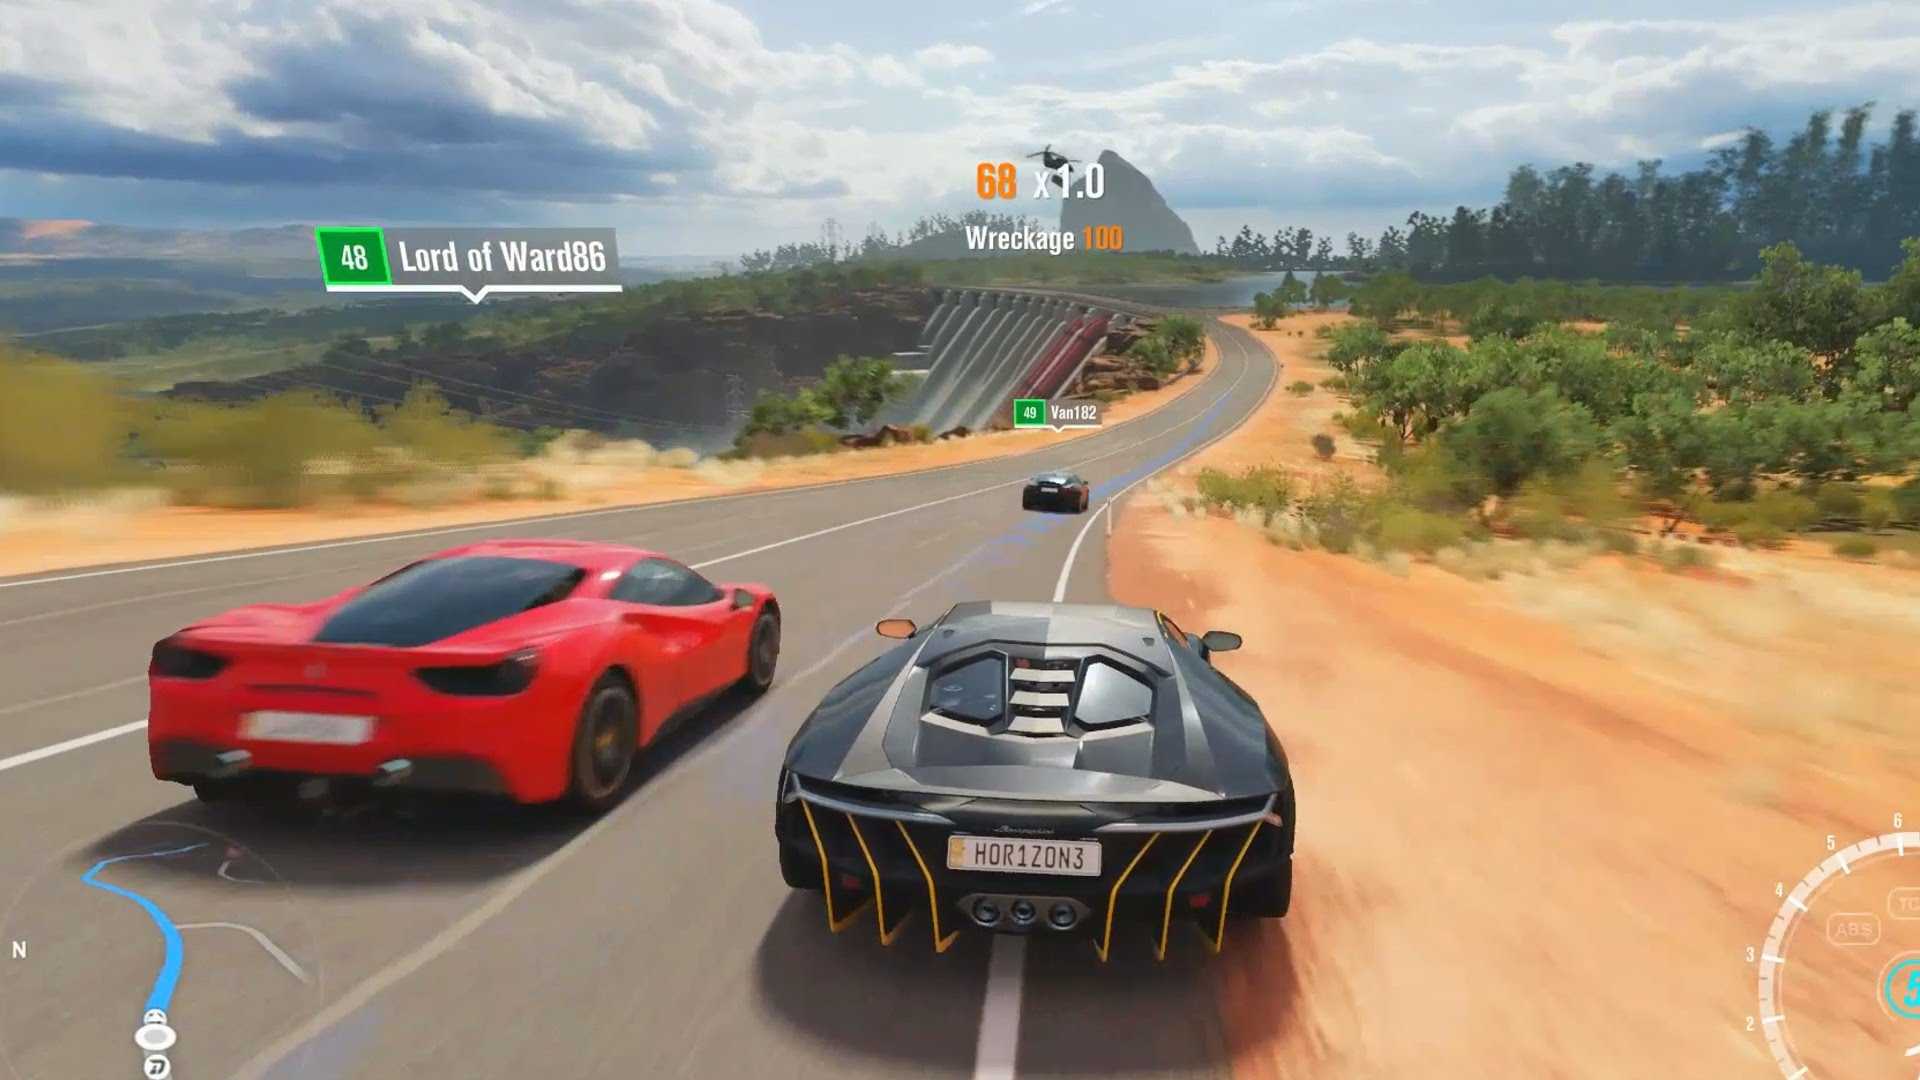 Forza Motorsport 8 Yakında Beta Testi Sunacak